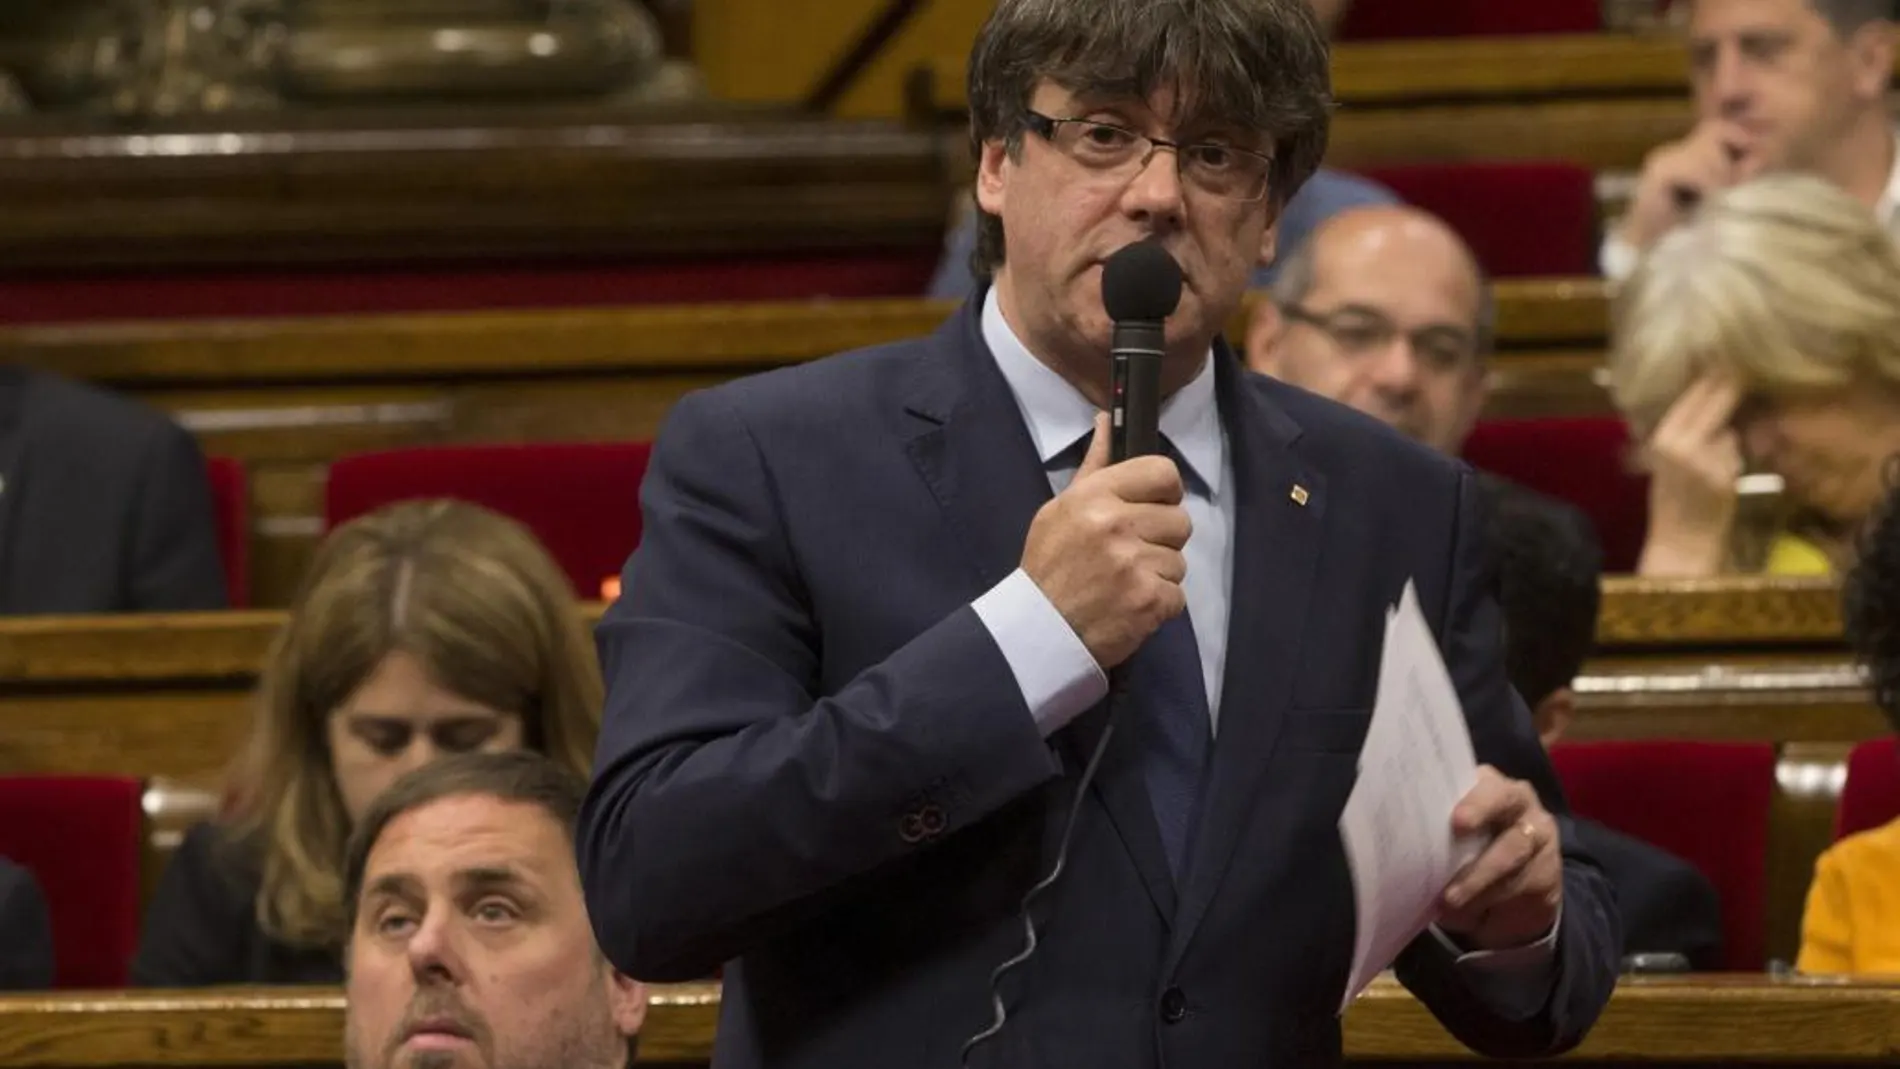 El presidente de la Generalitat, Carles Puigdemont, en el Parlament durante la sesión de control al gobierno catalán